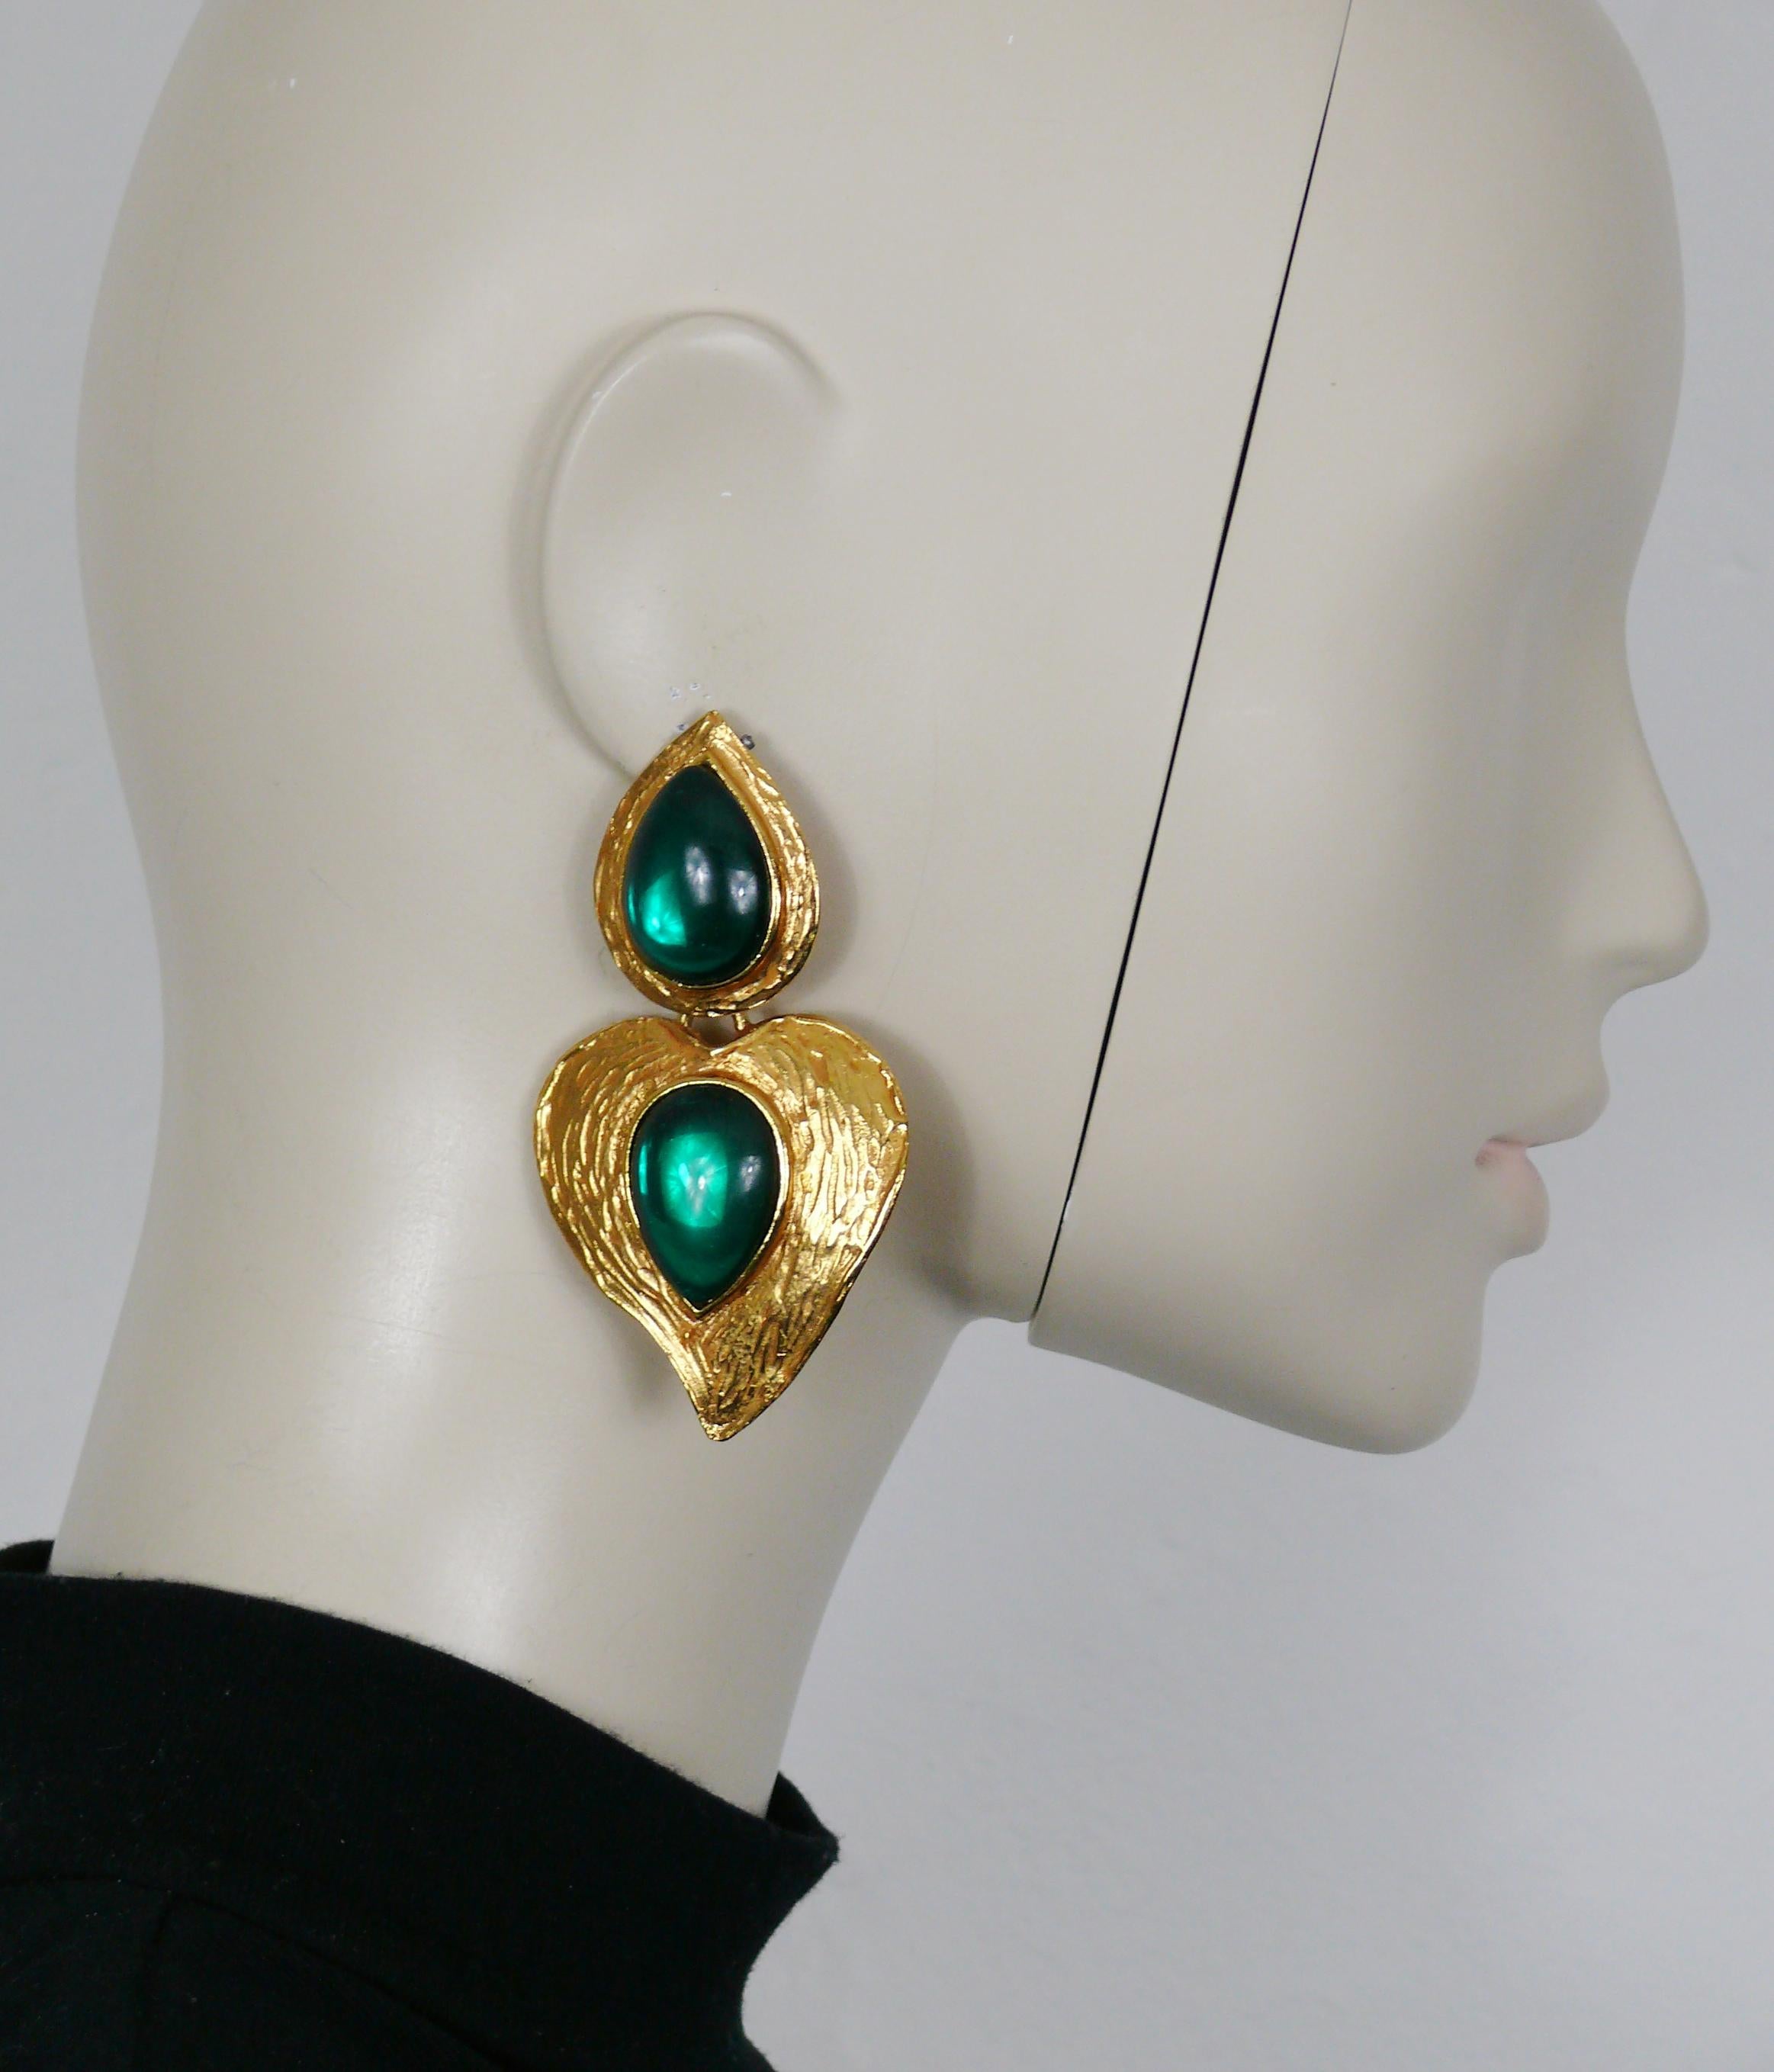 YVES SAINT LAURENT Vintage-Ohrringe mit strukturiertem goldfarbenem Herz und zwei smaragdgrünen Glascabochons (Clip-on). 

Geprägtes YSL.

Ungefähre Maße: Höhe ca. 8,2 cm (3,23 Zoll) / max. Breite ca. 4,6 cm (1,81 Zoll).

Gewicht pro Ohrring: ca. 30